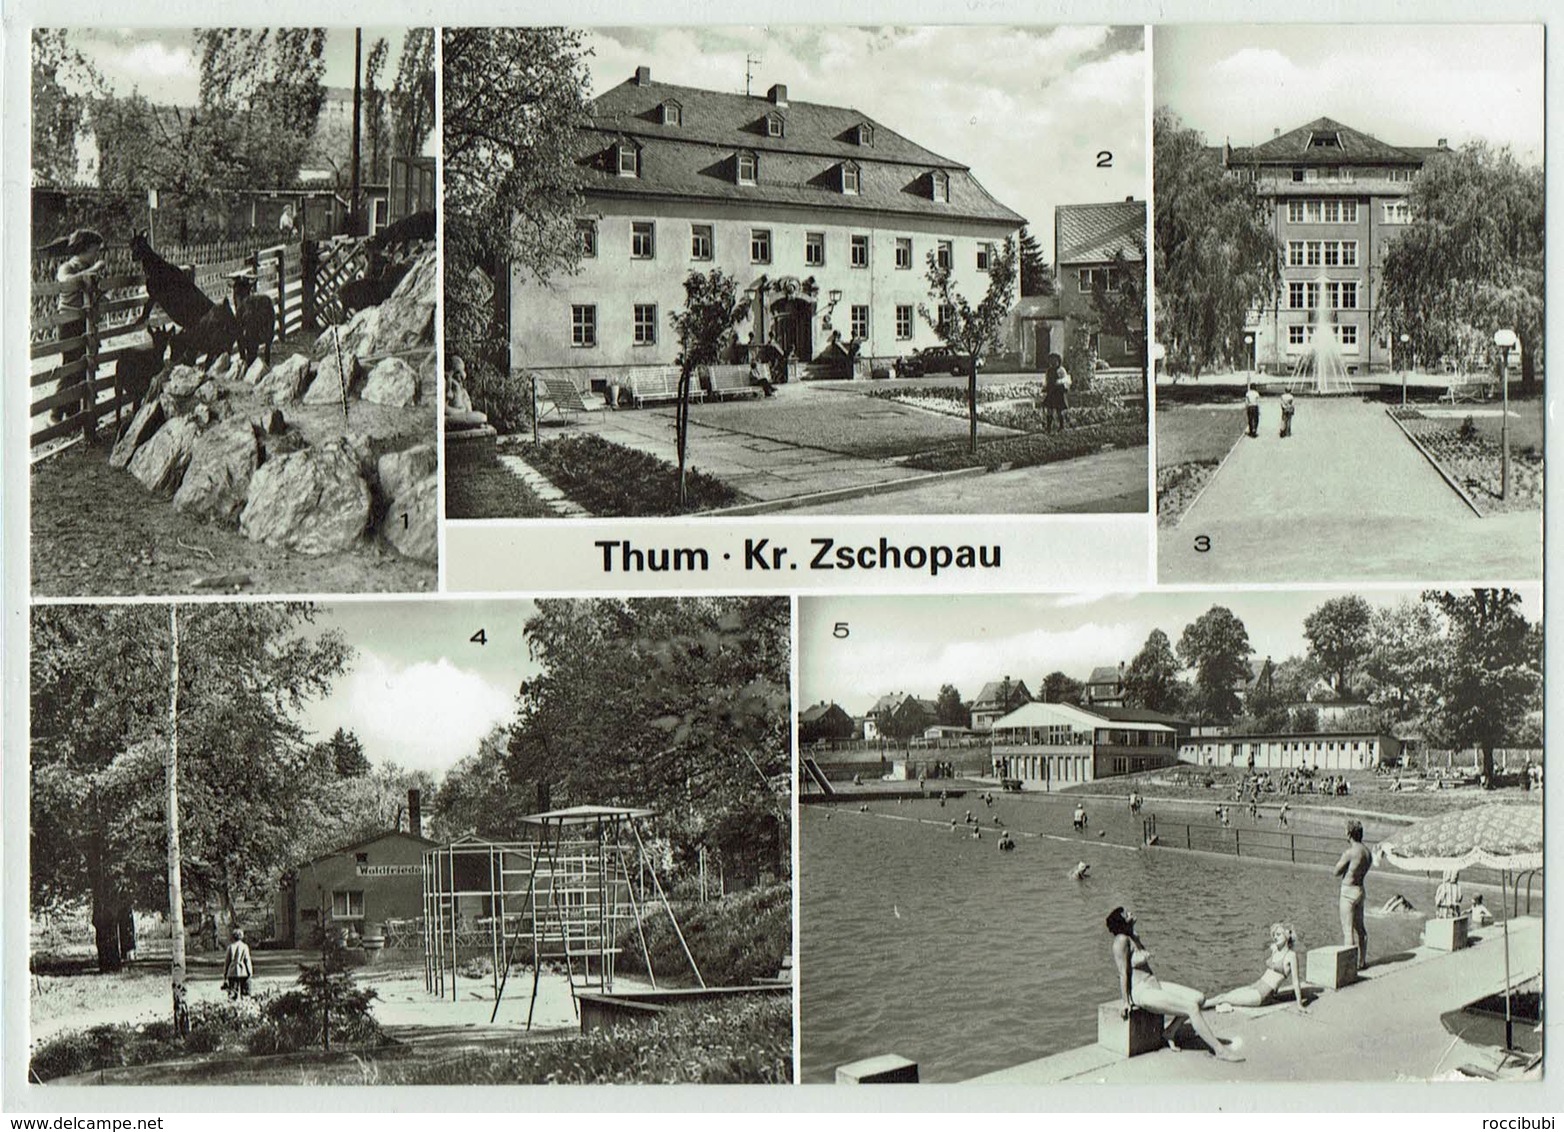 Thum, Kreis Zschopau - Thum